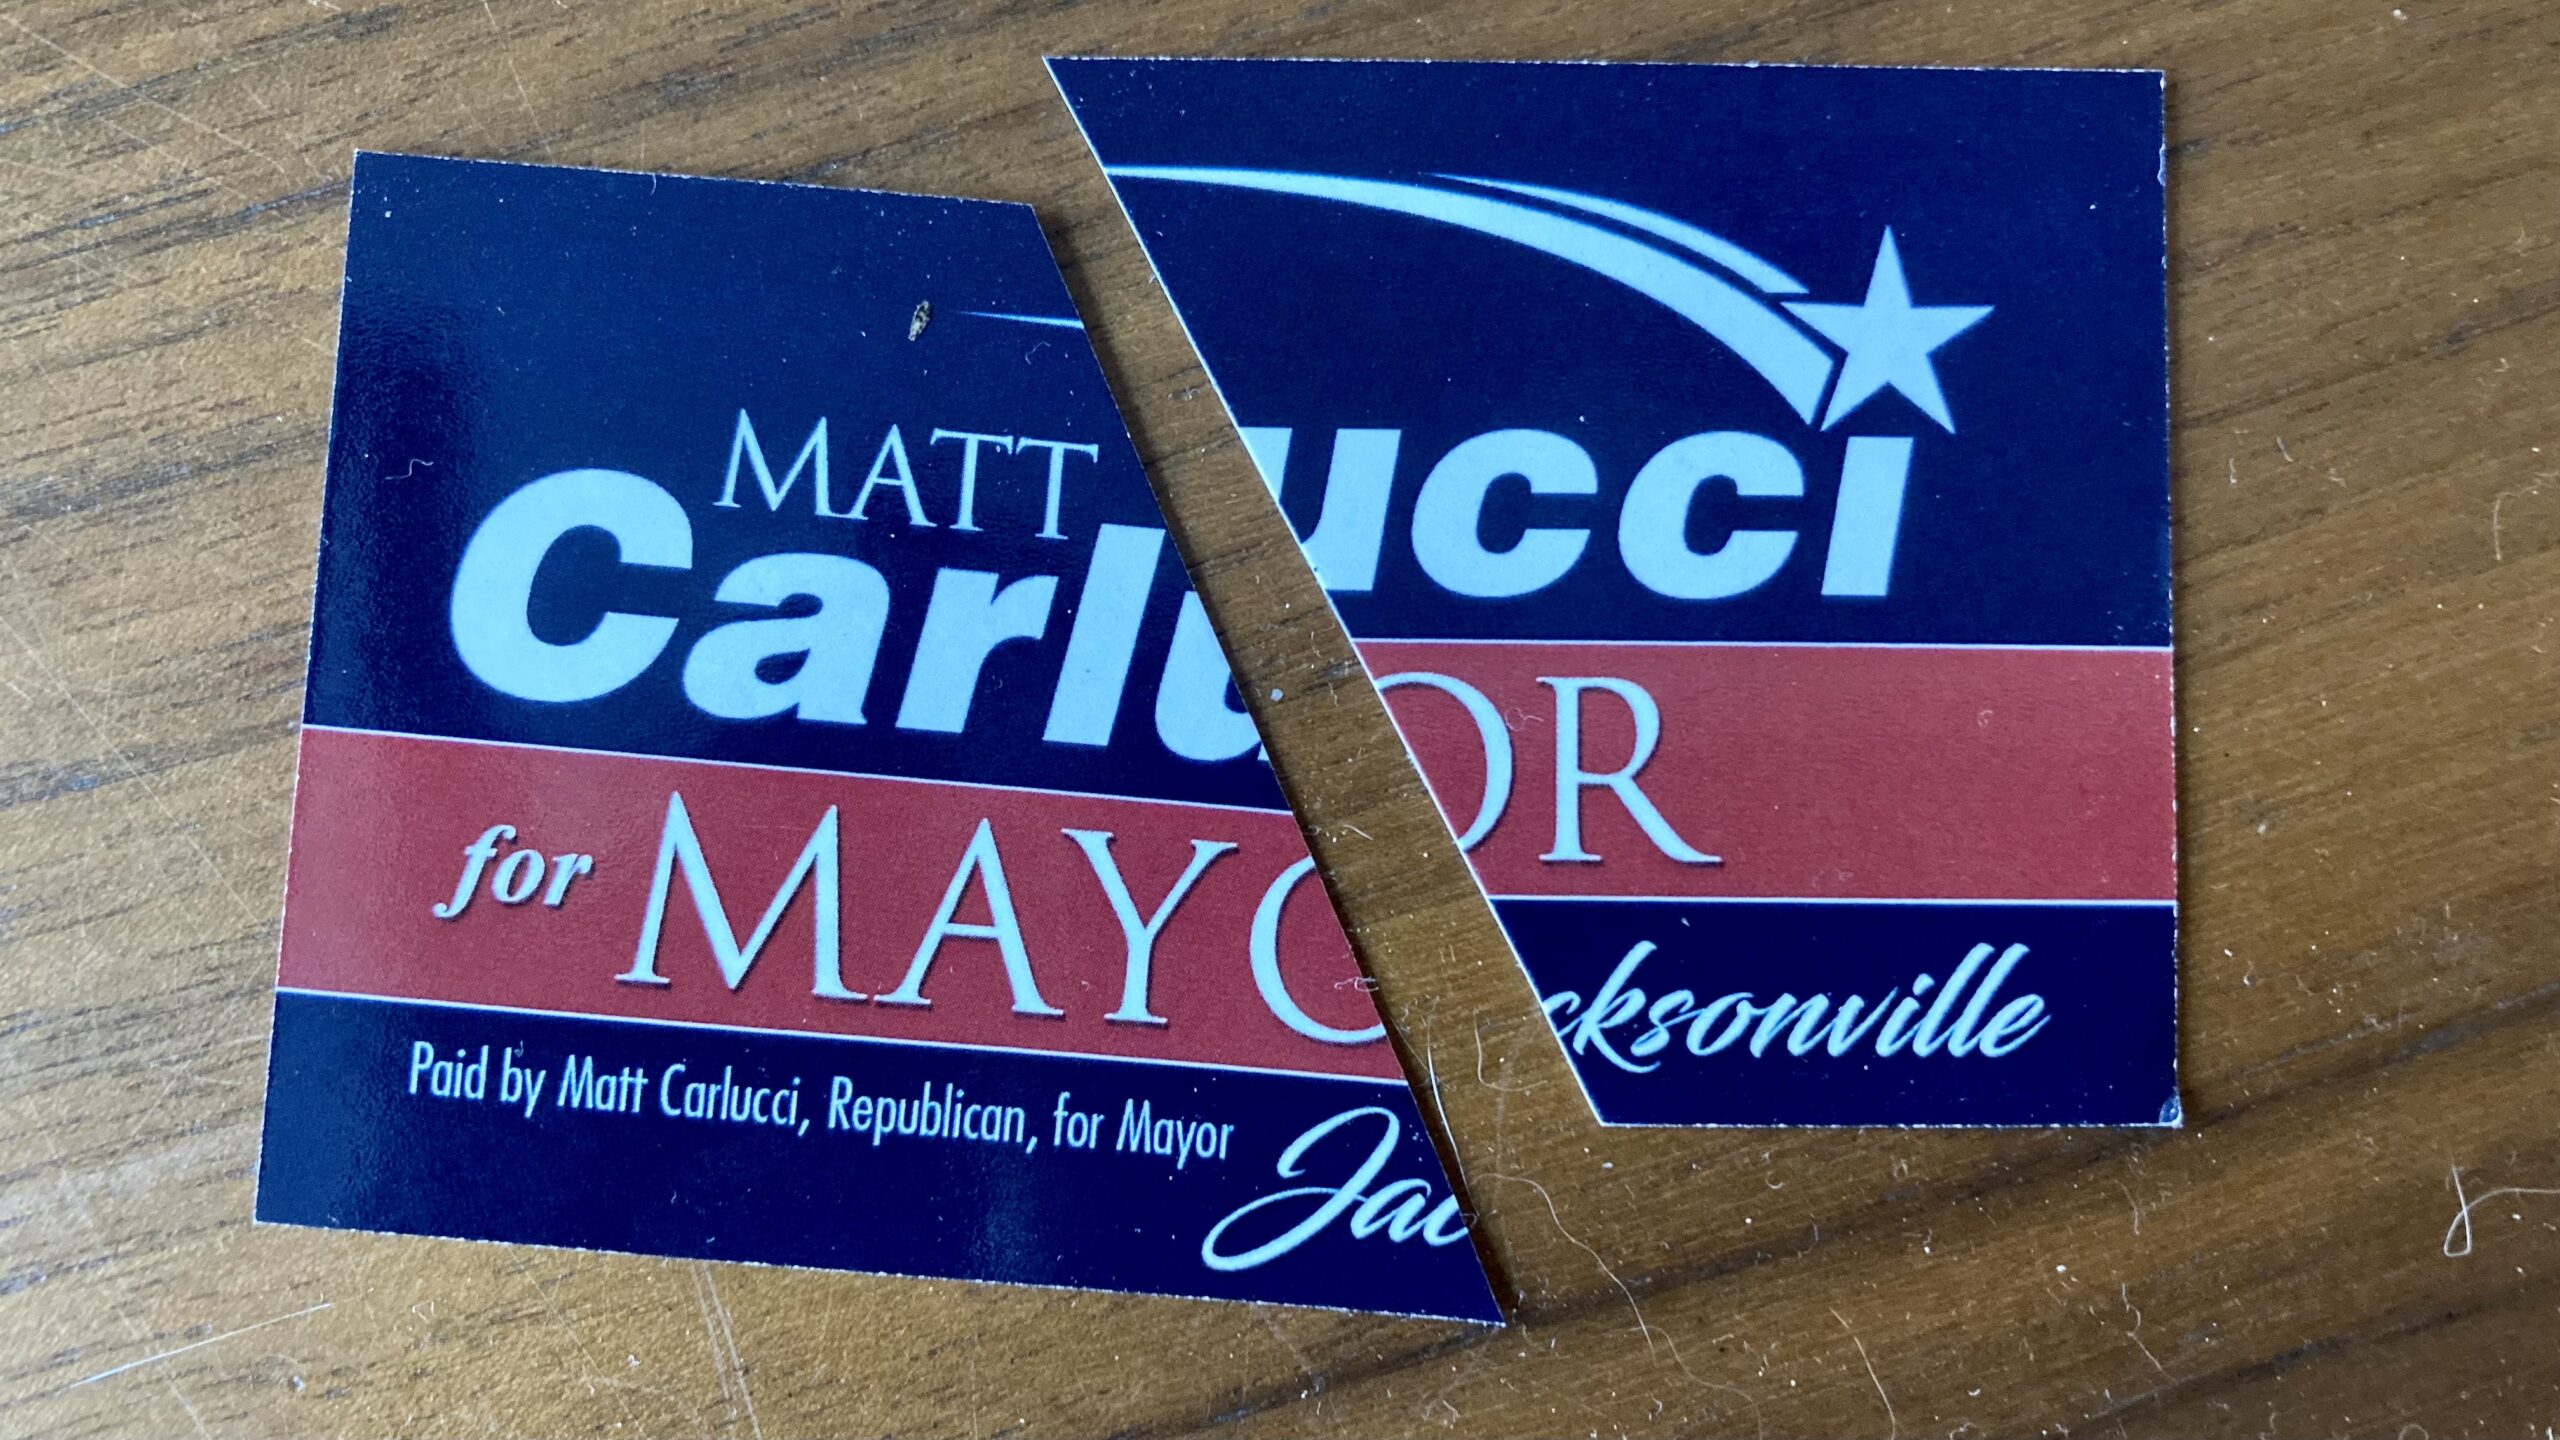 Carlucci for mayor card cut in half